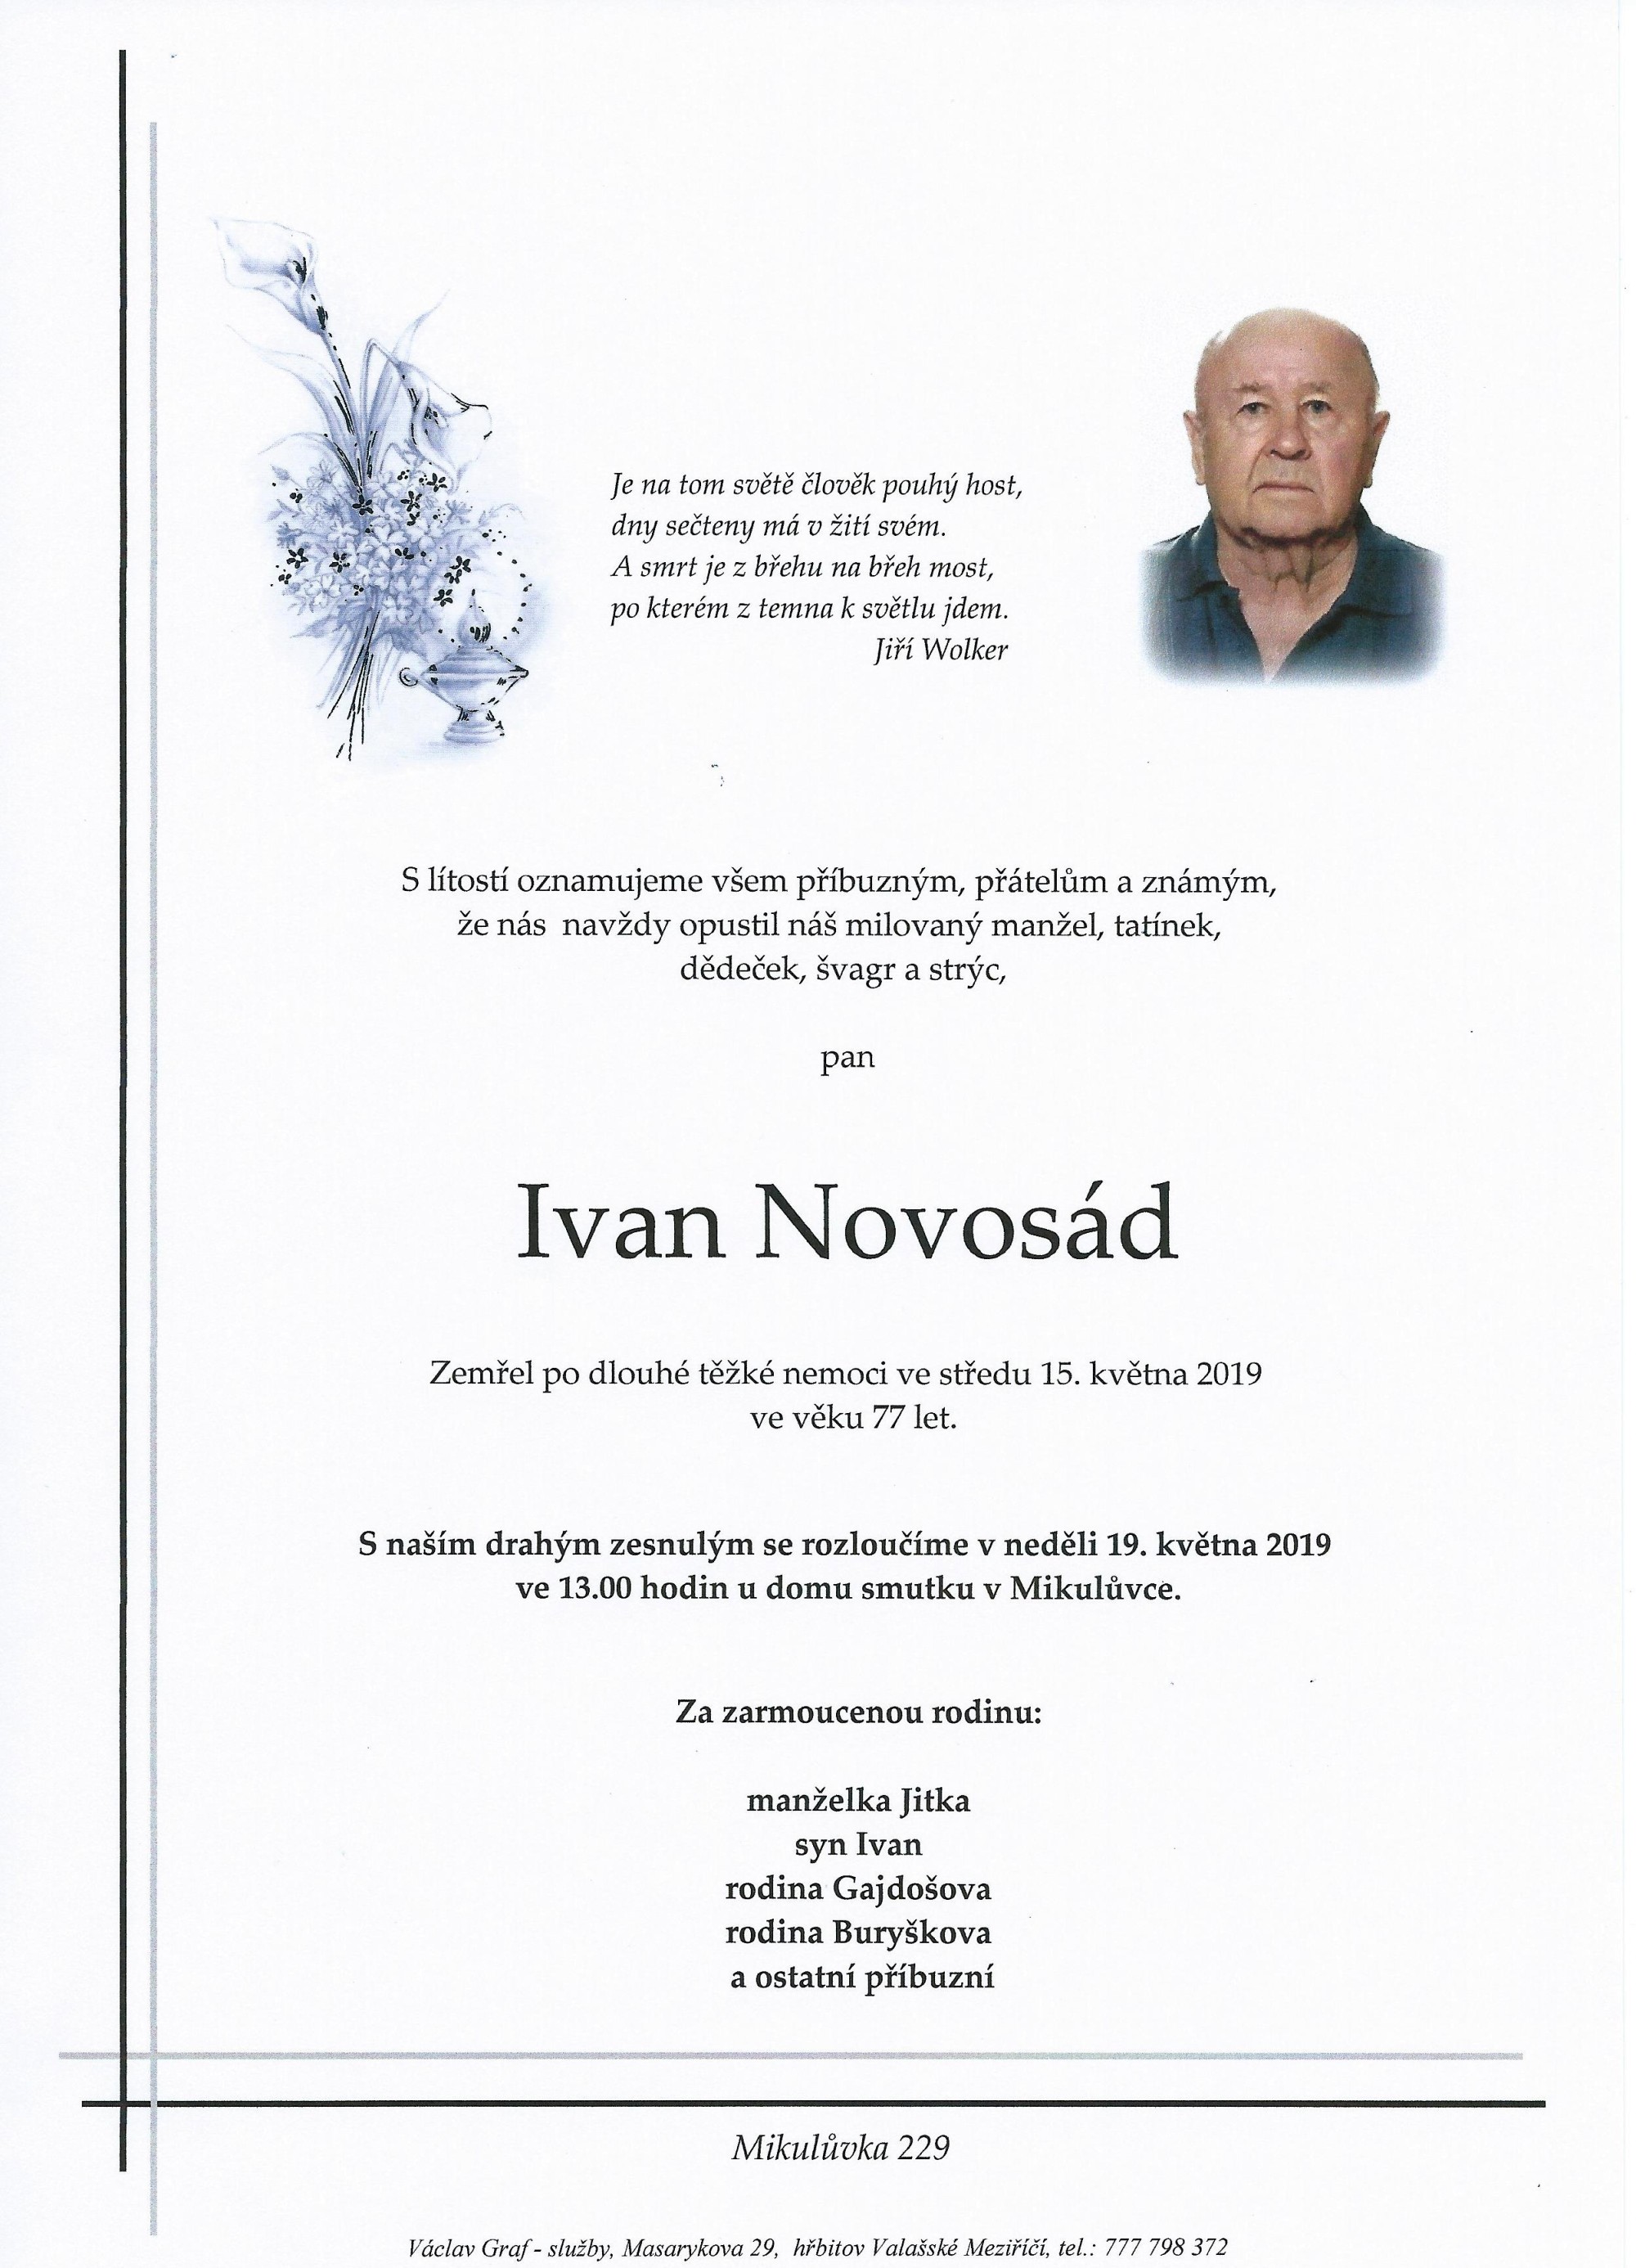 Ivan Novosád